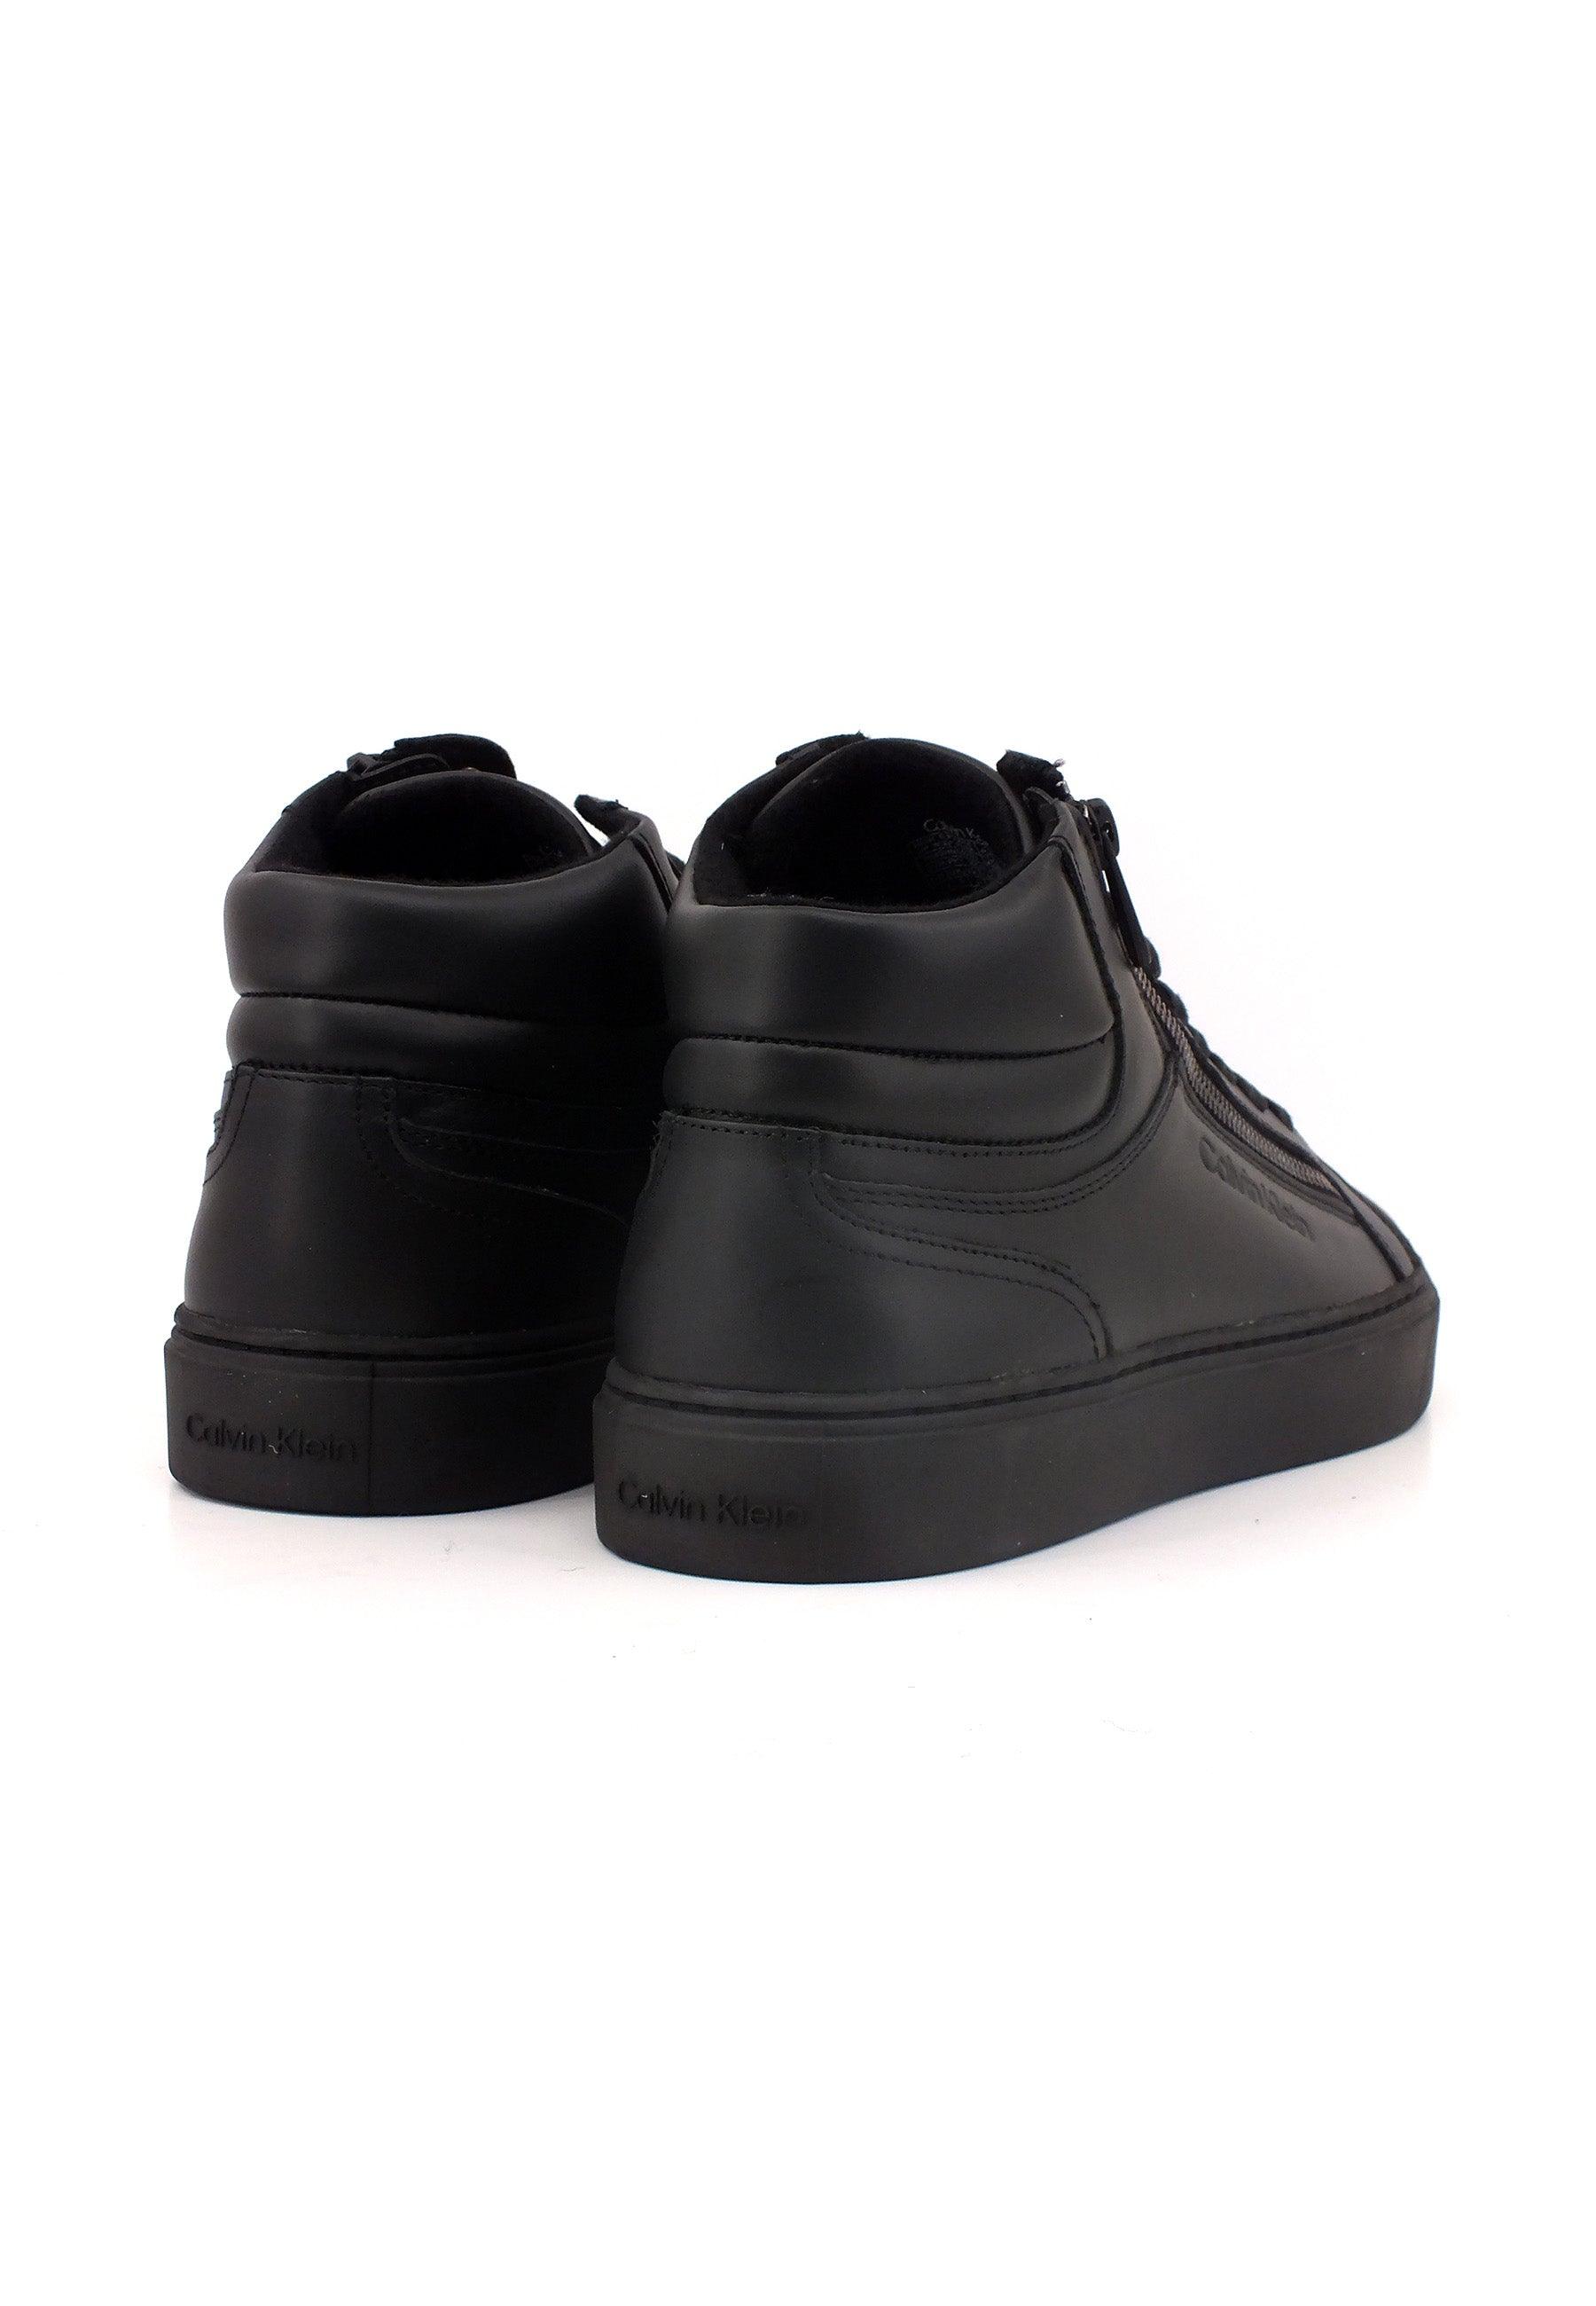 CALVIN KLEIN Sneaker High Uomo Triple Black HM0HM01269 - Sandrini Calzature e Abbigliamento